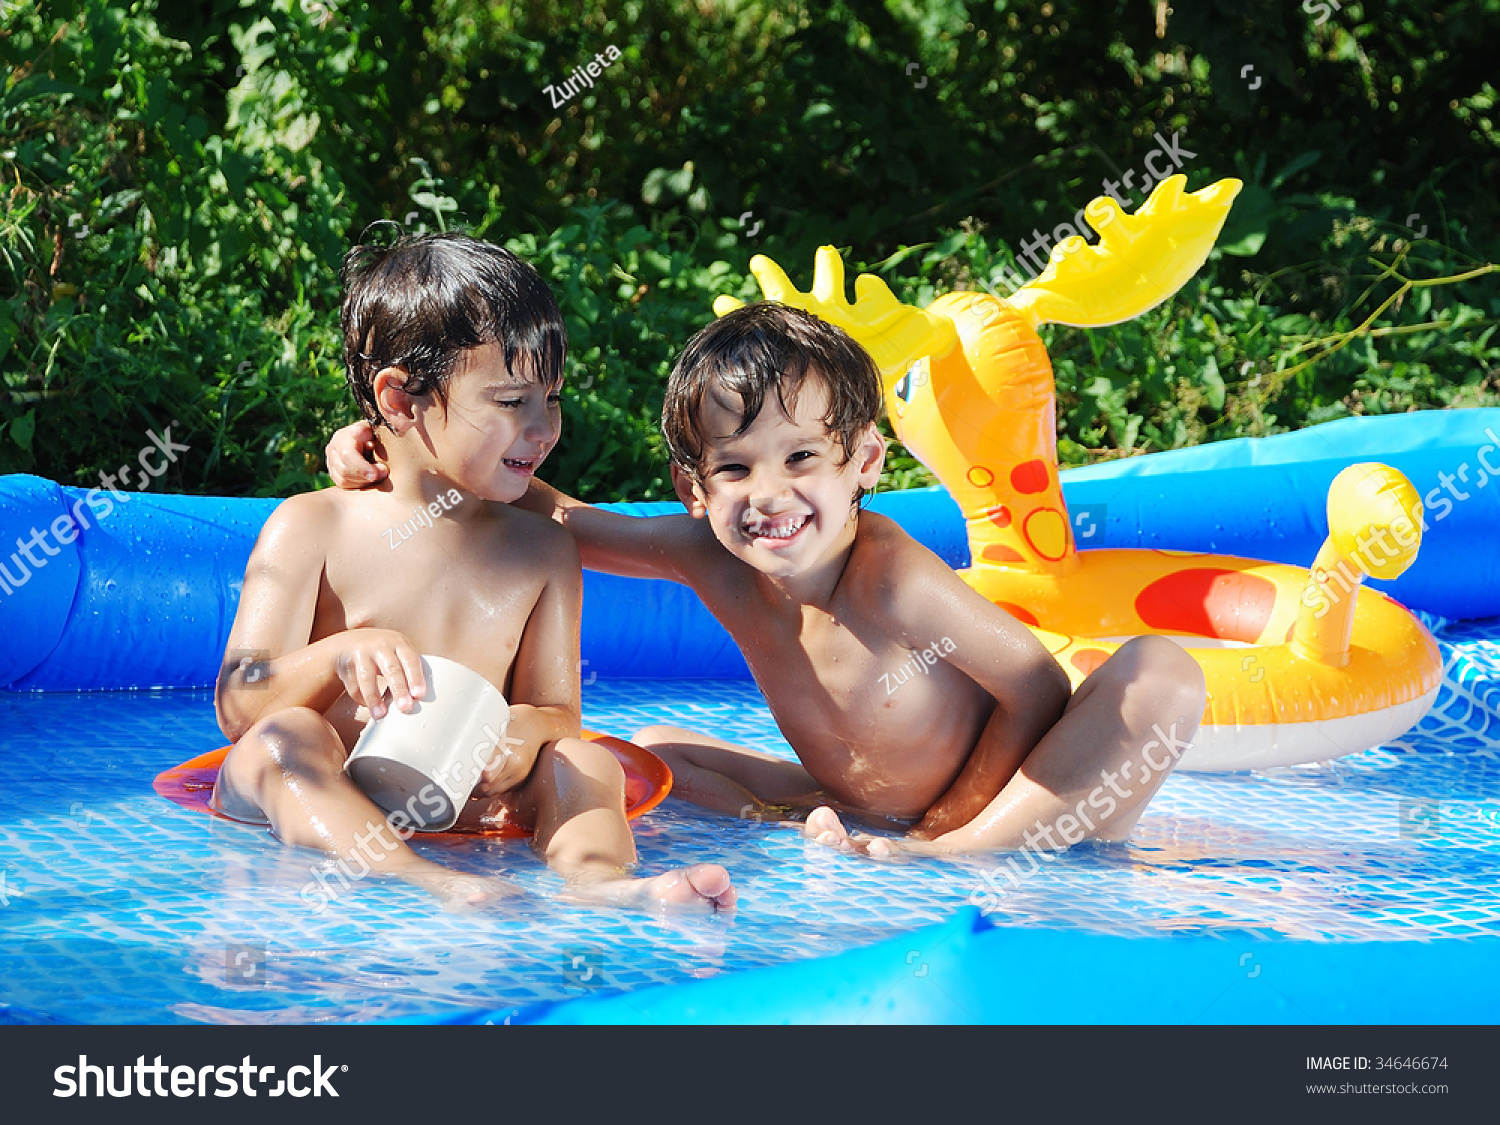 Мальчик купается в бассейне. Дети в бассейне. Купание детей в бассейне на даче. Дети в бассейне на даче купаются.